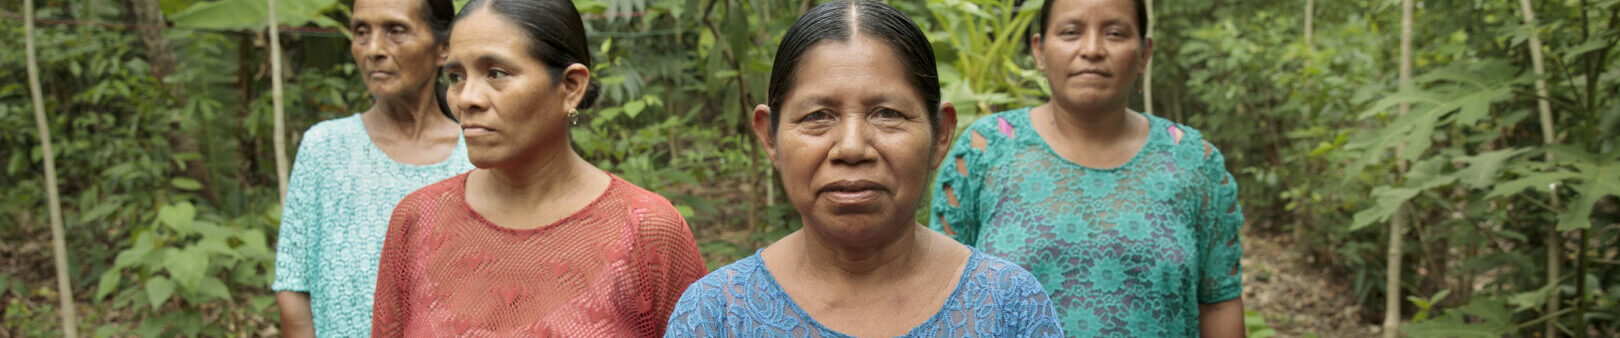 Frauen in Guatemala